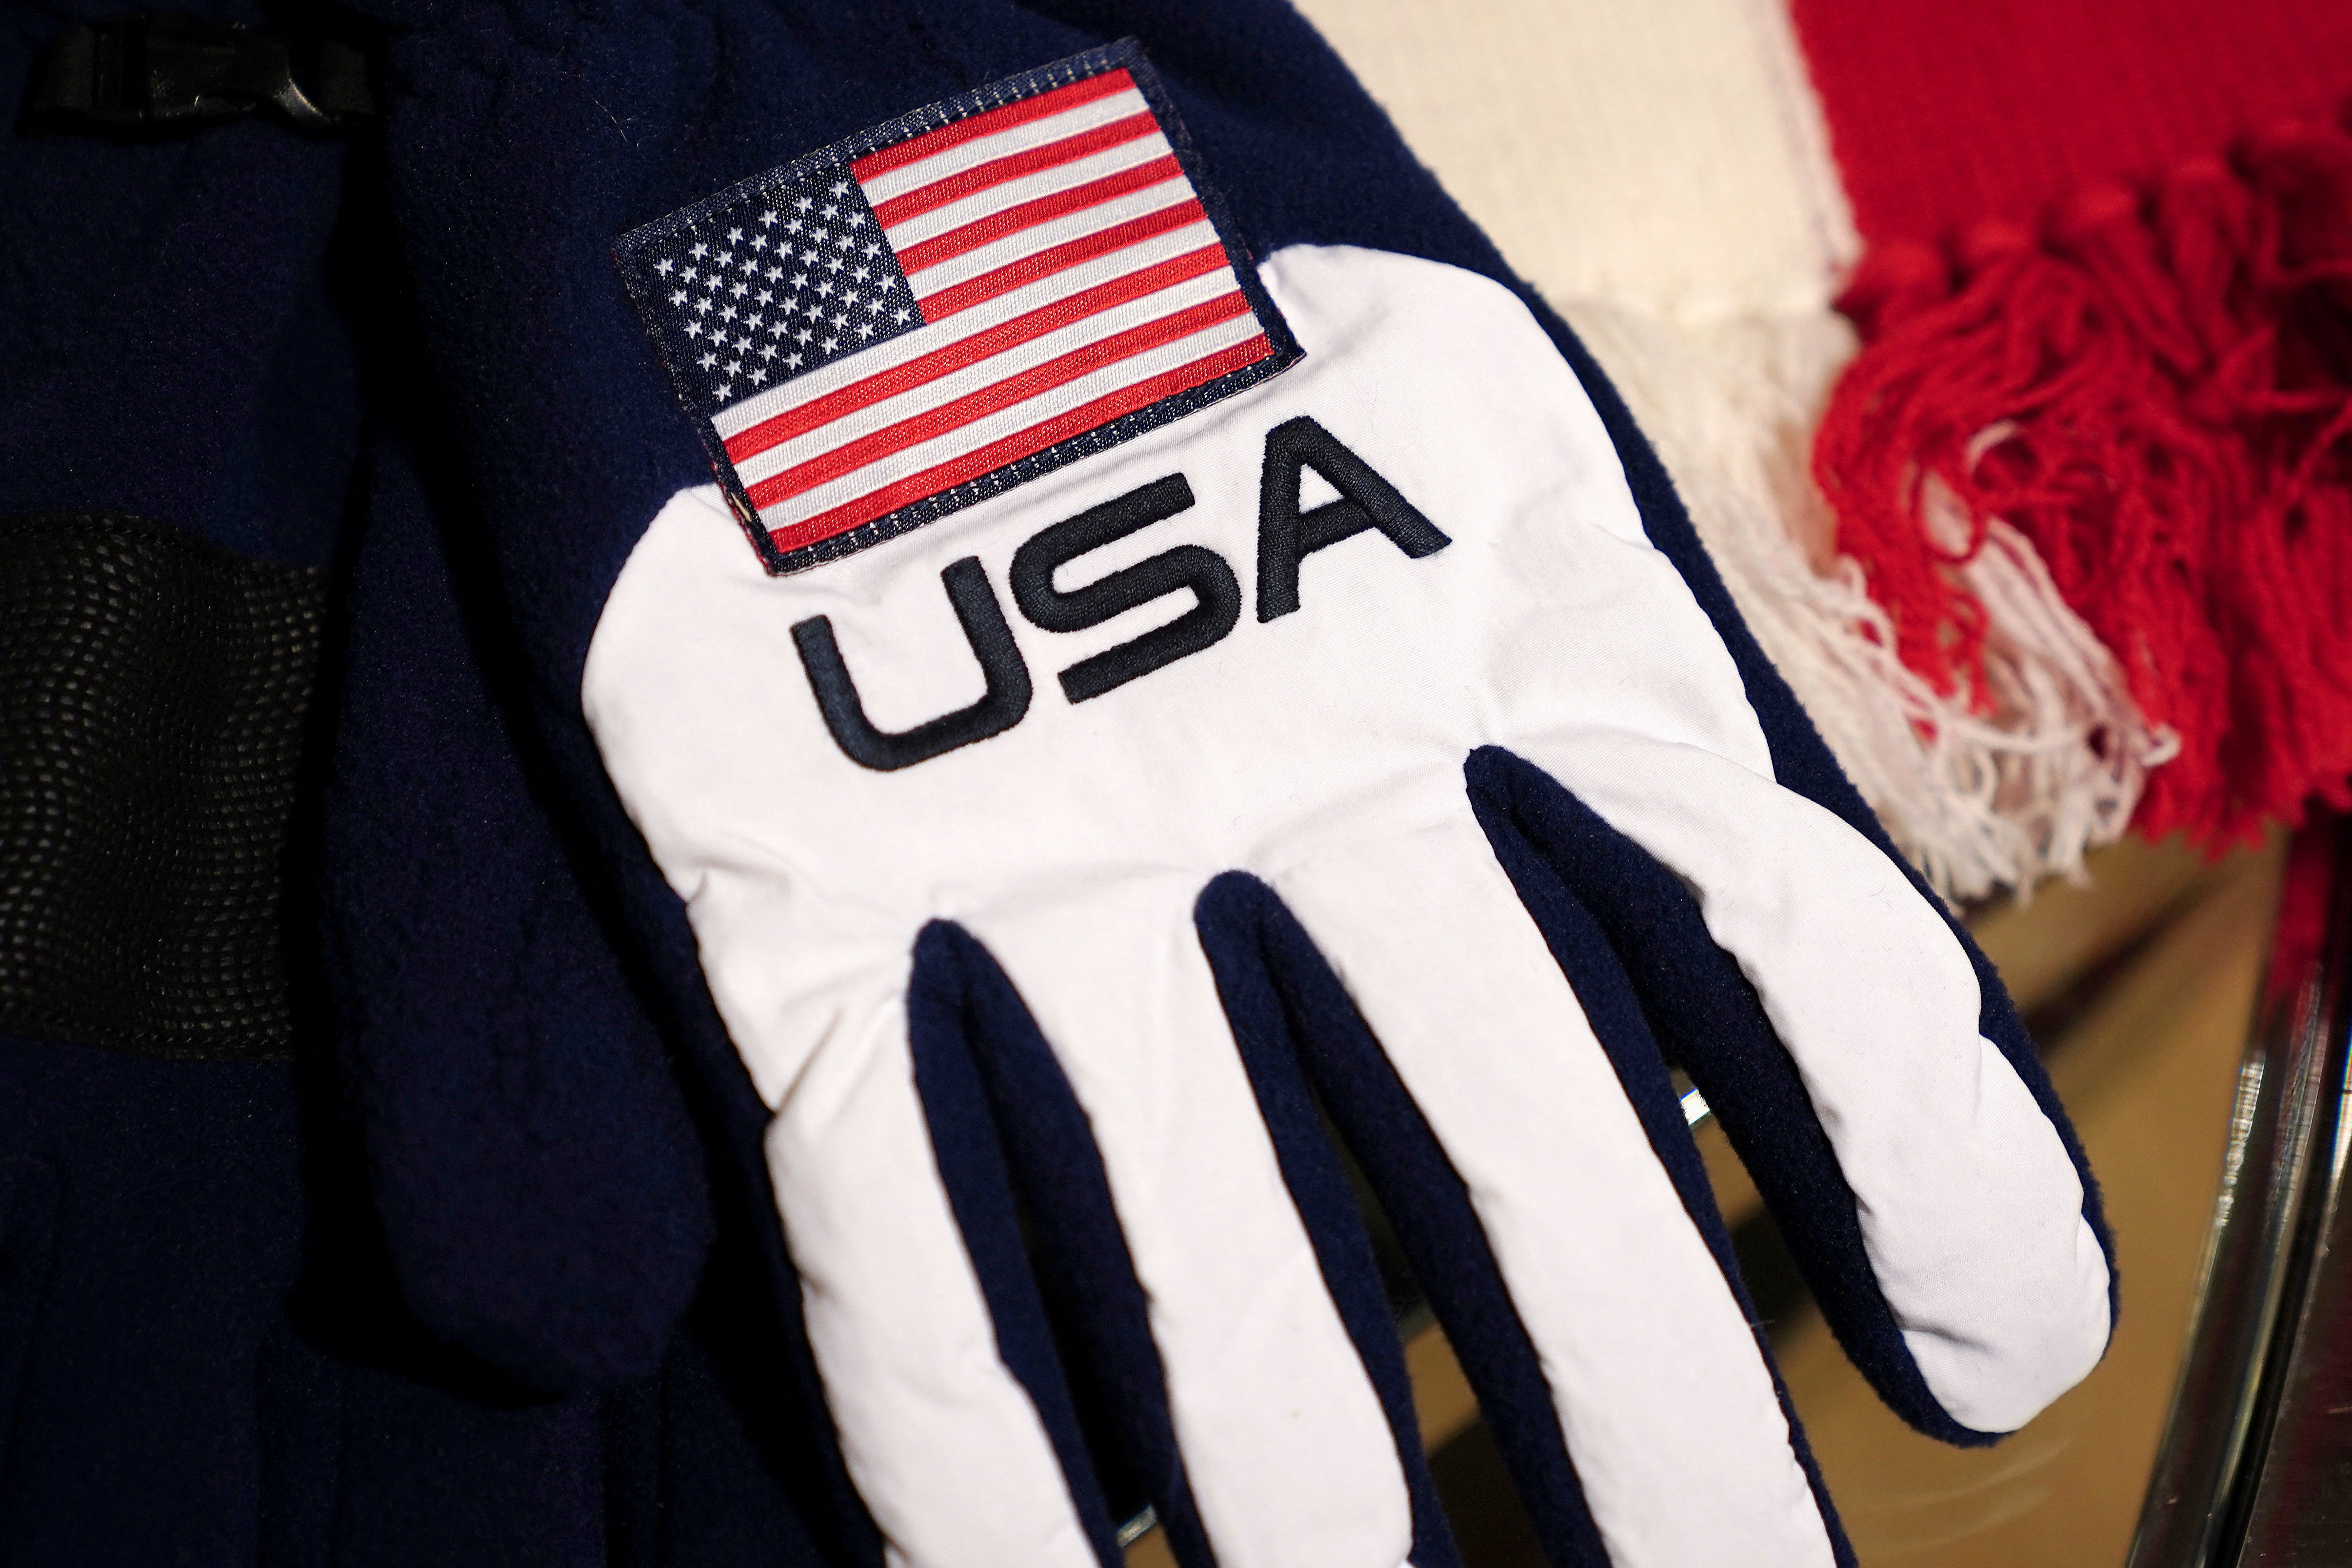 Ralph Lauren unveils uniforms for Beijing Winter Olympics closing ceremony